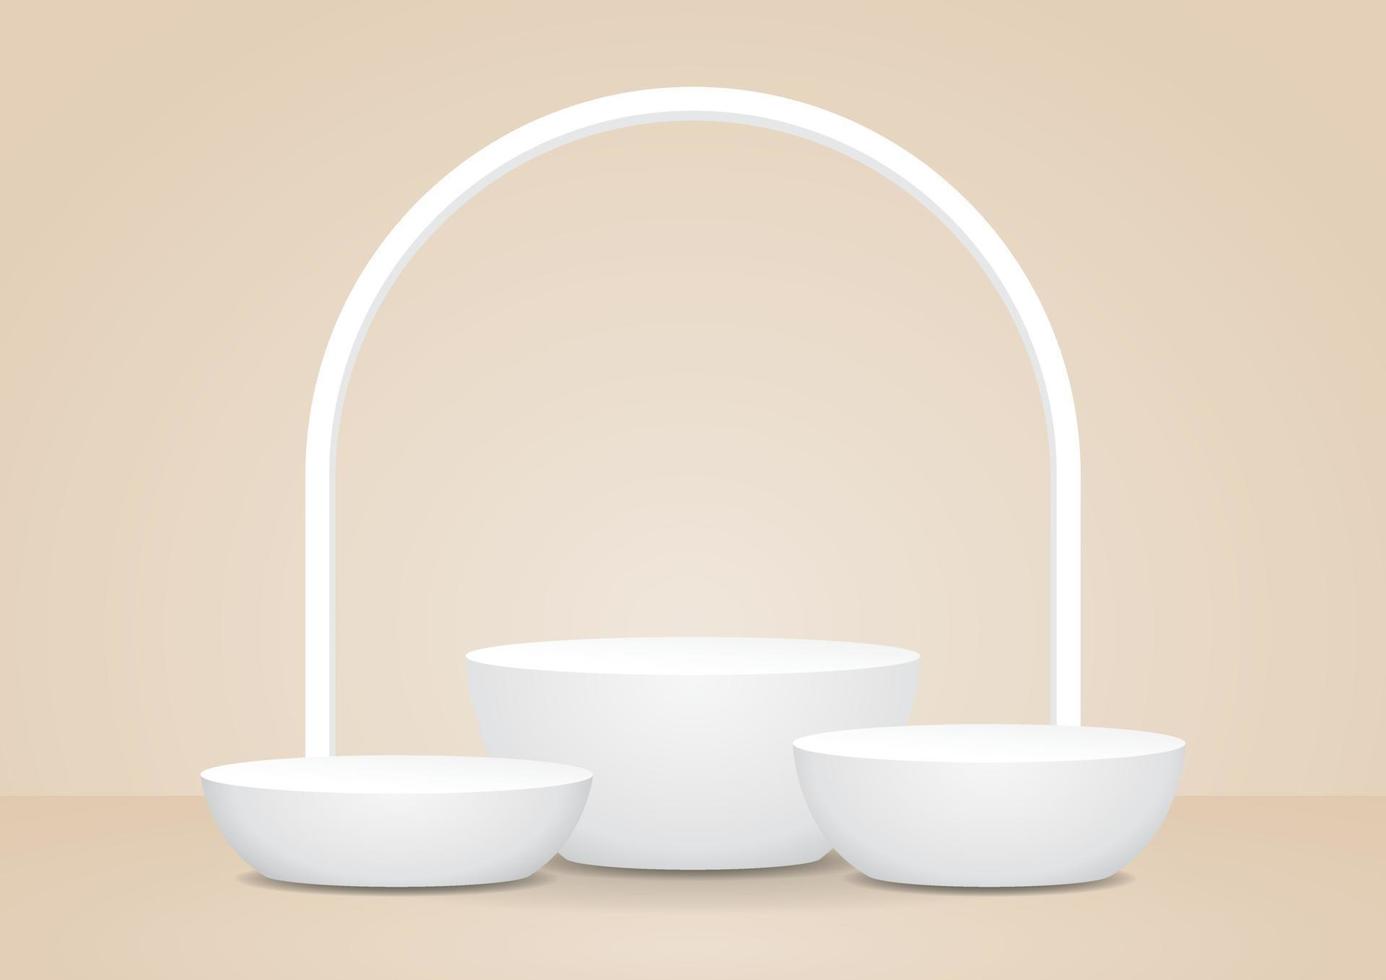 minimal stil vit produkt visa 3d illustration vektor för sätta din objekt